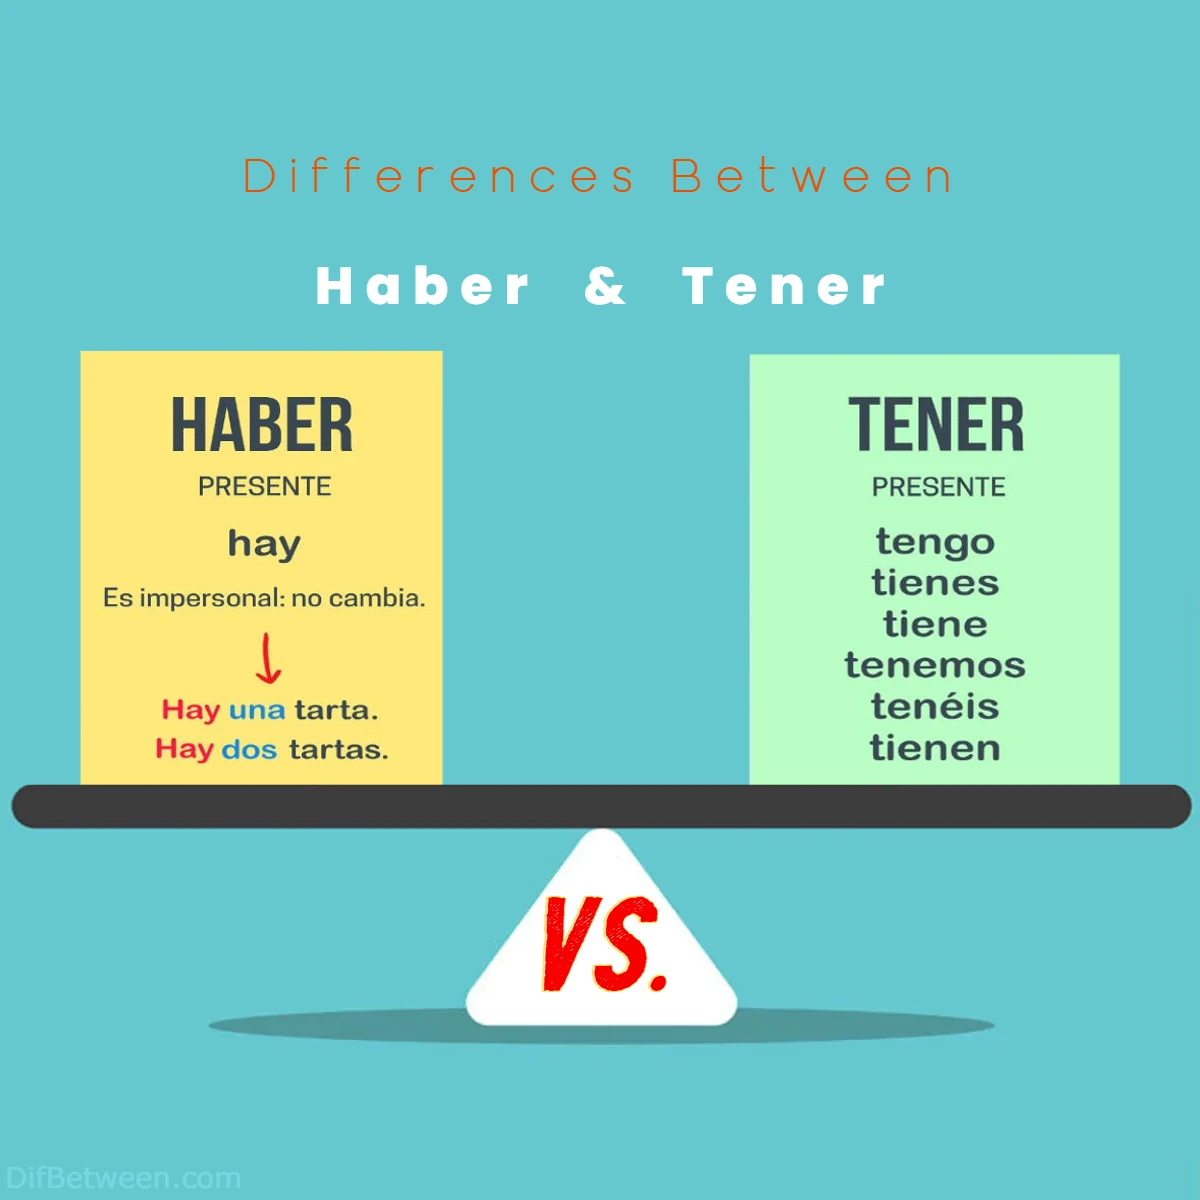 Differences Between Haber vs Tener